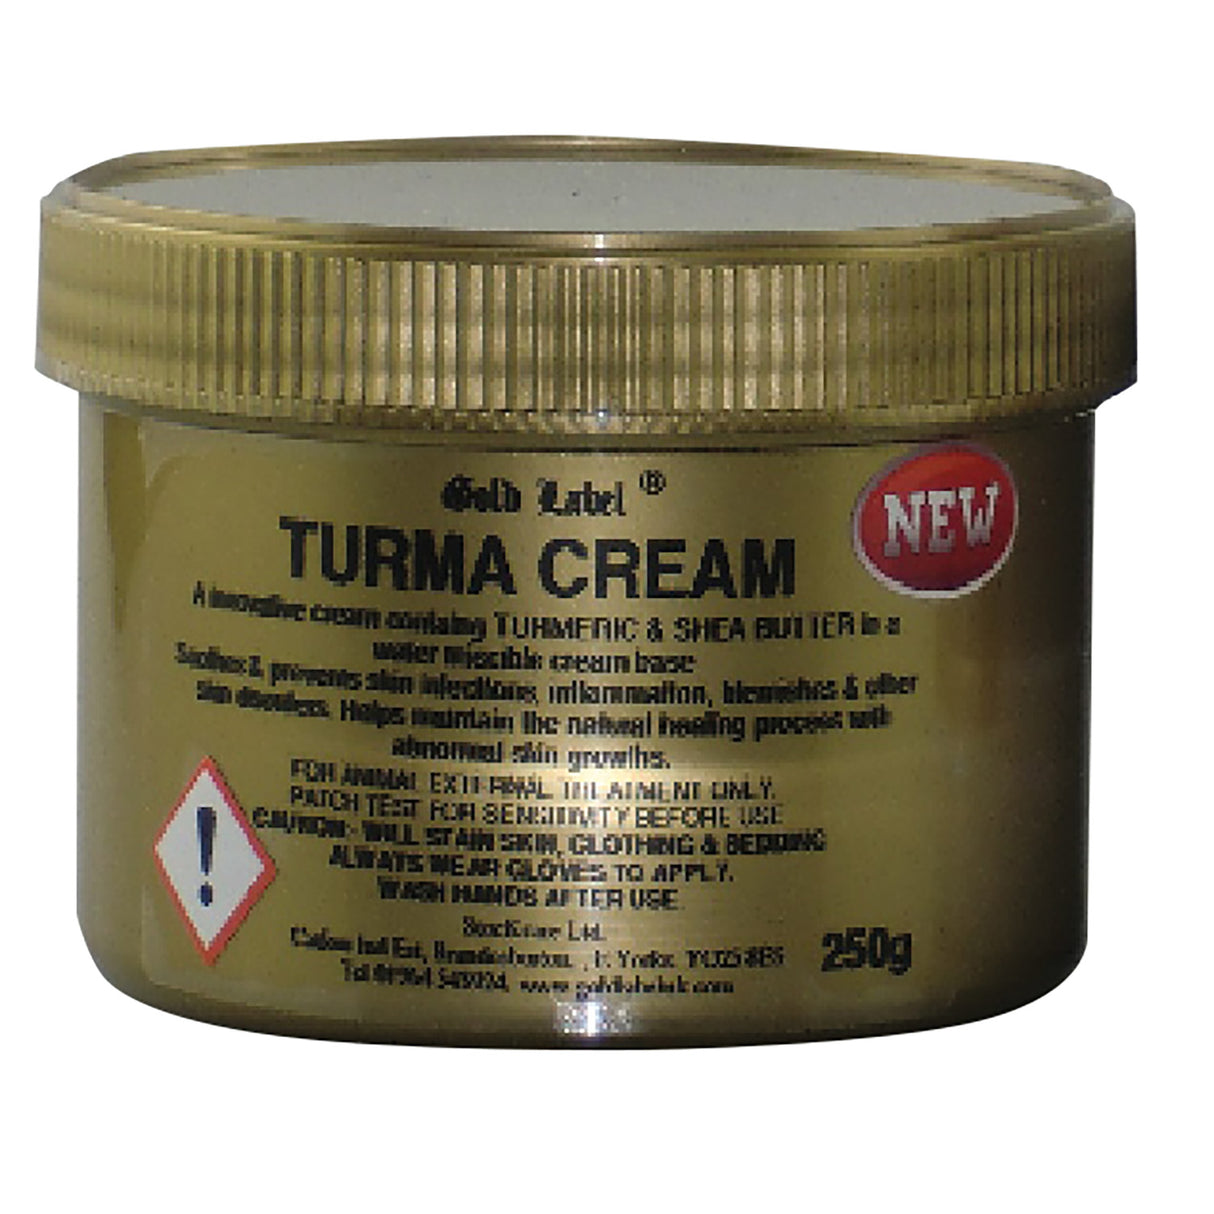 Crème Turma Gold Label